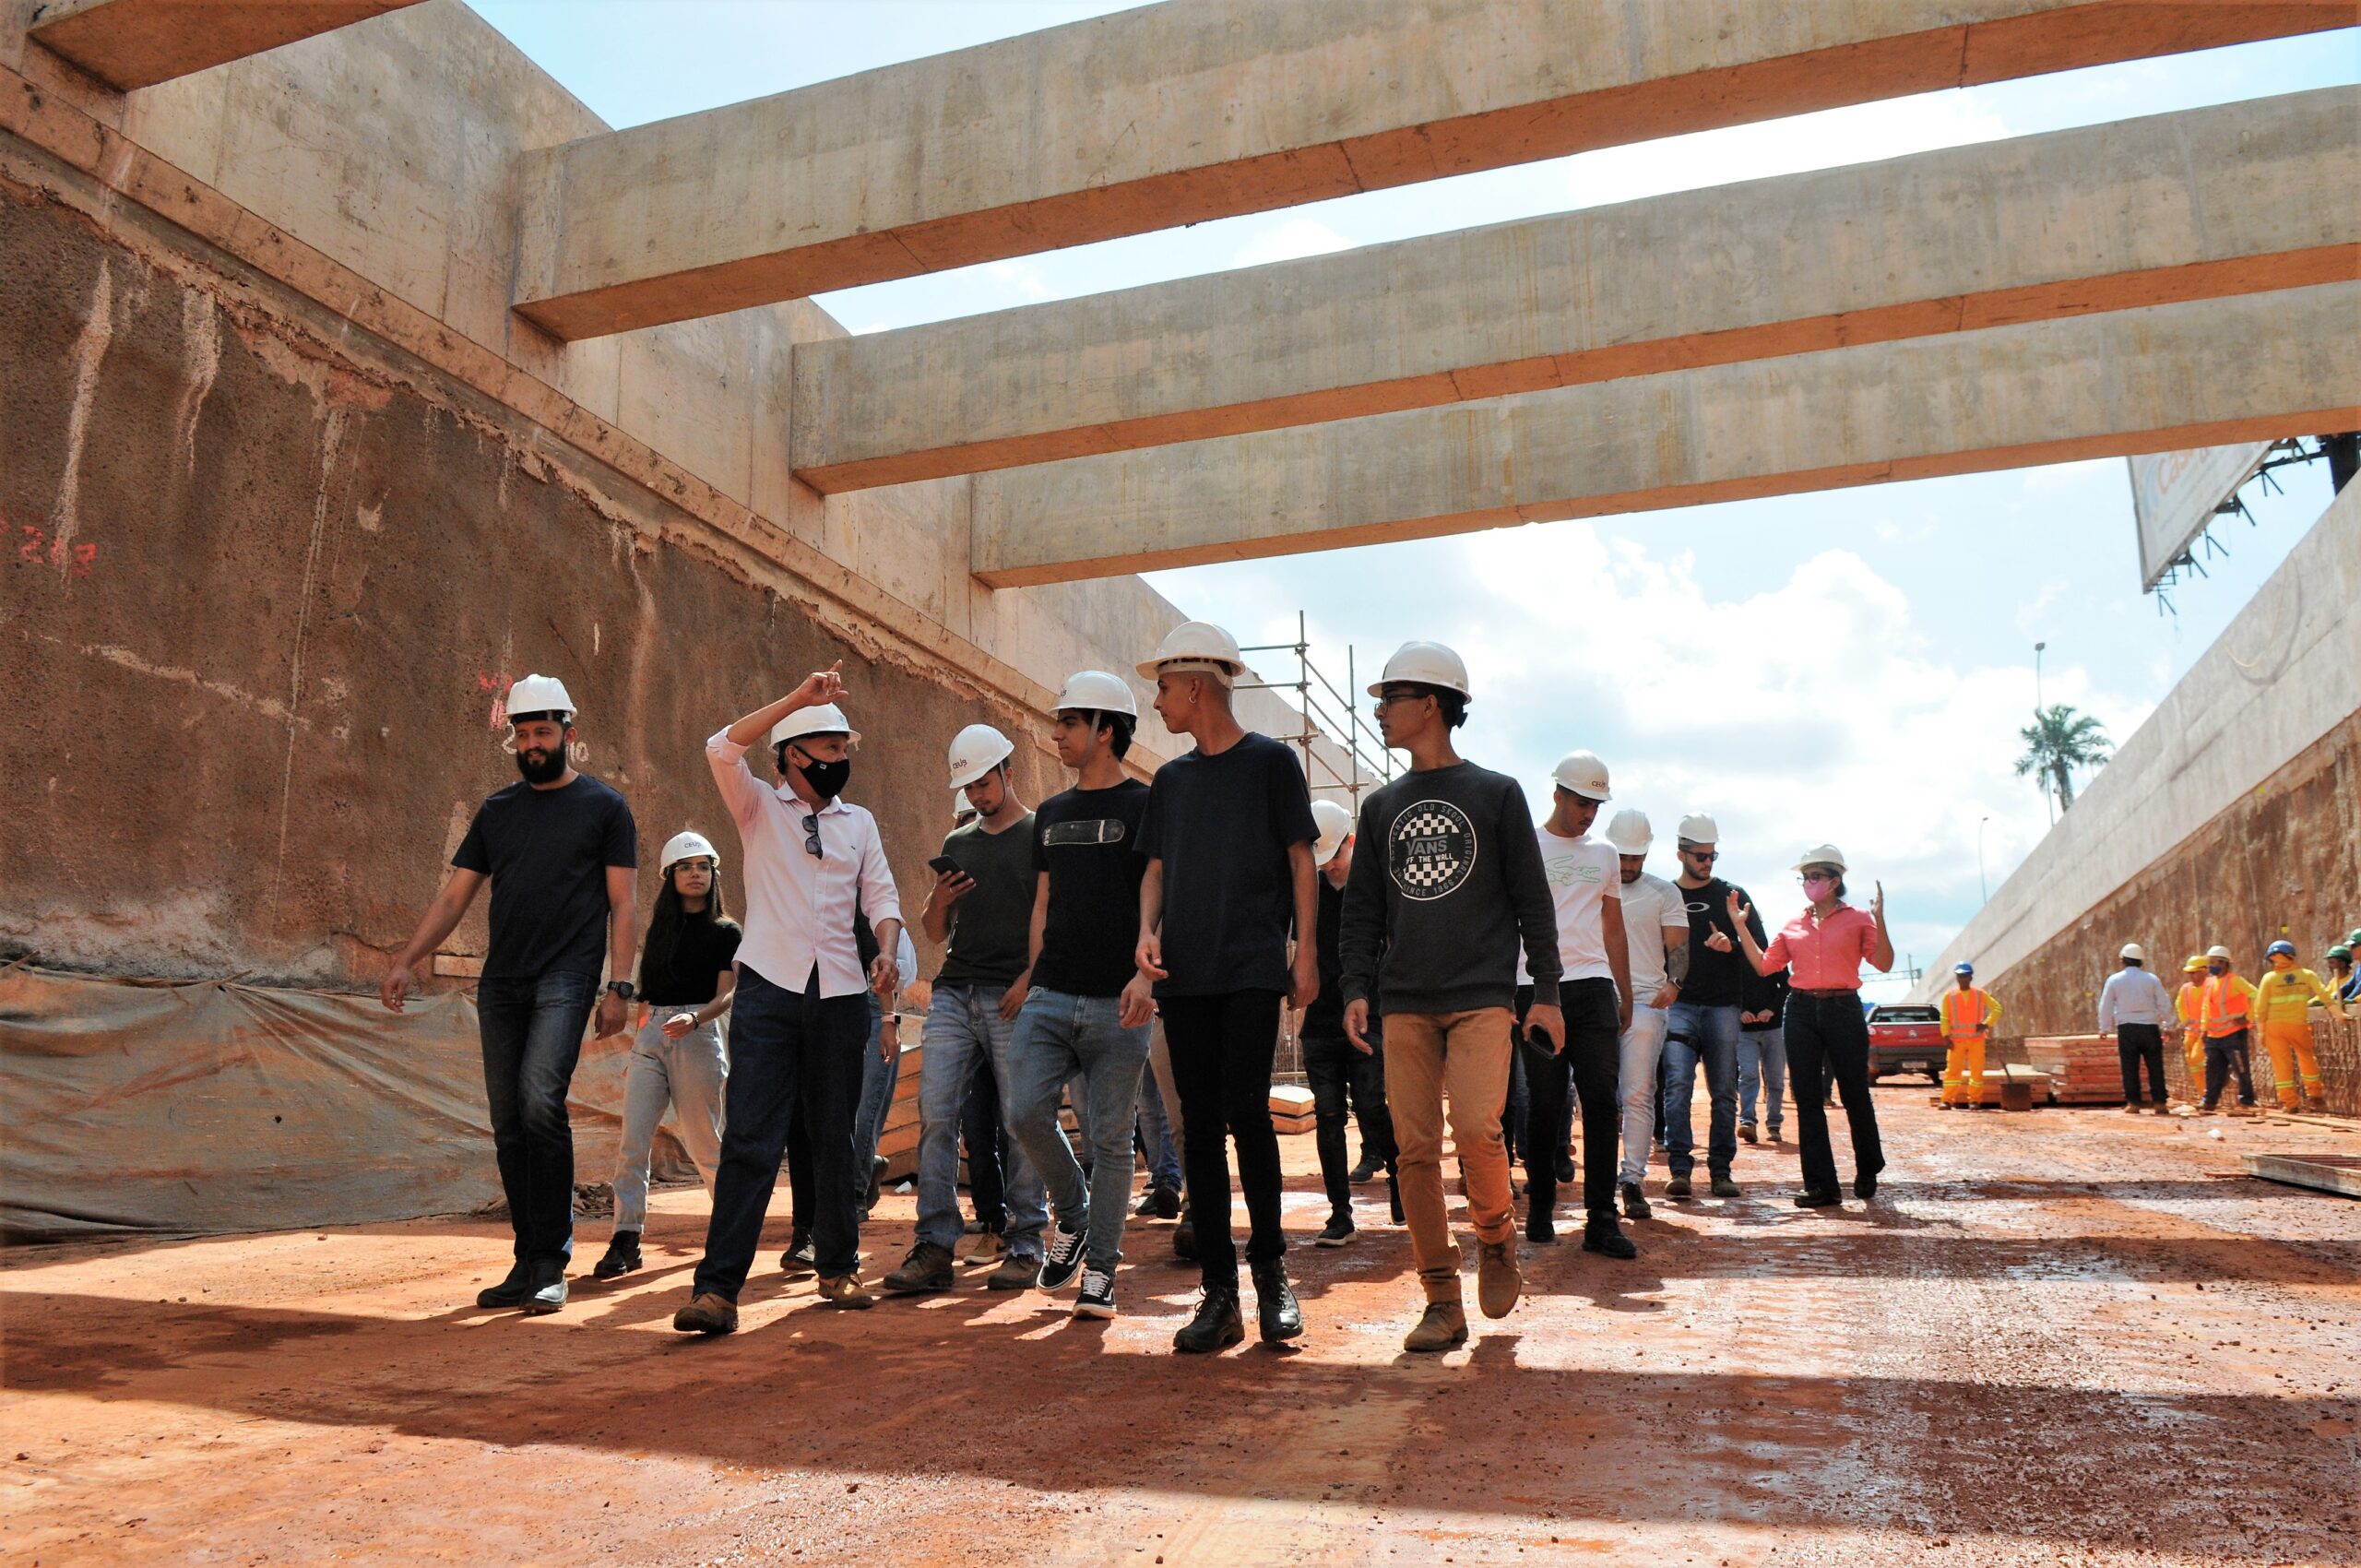 Por cerca de 1h30, os estudantes percorreram a fase 1 das obras, visitaram parte dos viadutos norte e sul, que já foram abertos, e andaram no boulevard superior, onde será reaberta a via e a pista do BRT | Foto: Paulo H. Car4valho/Agência Brasília